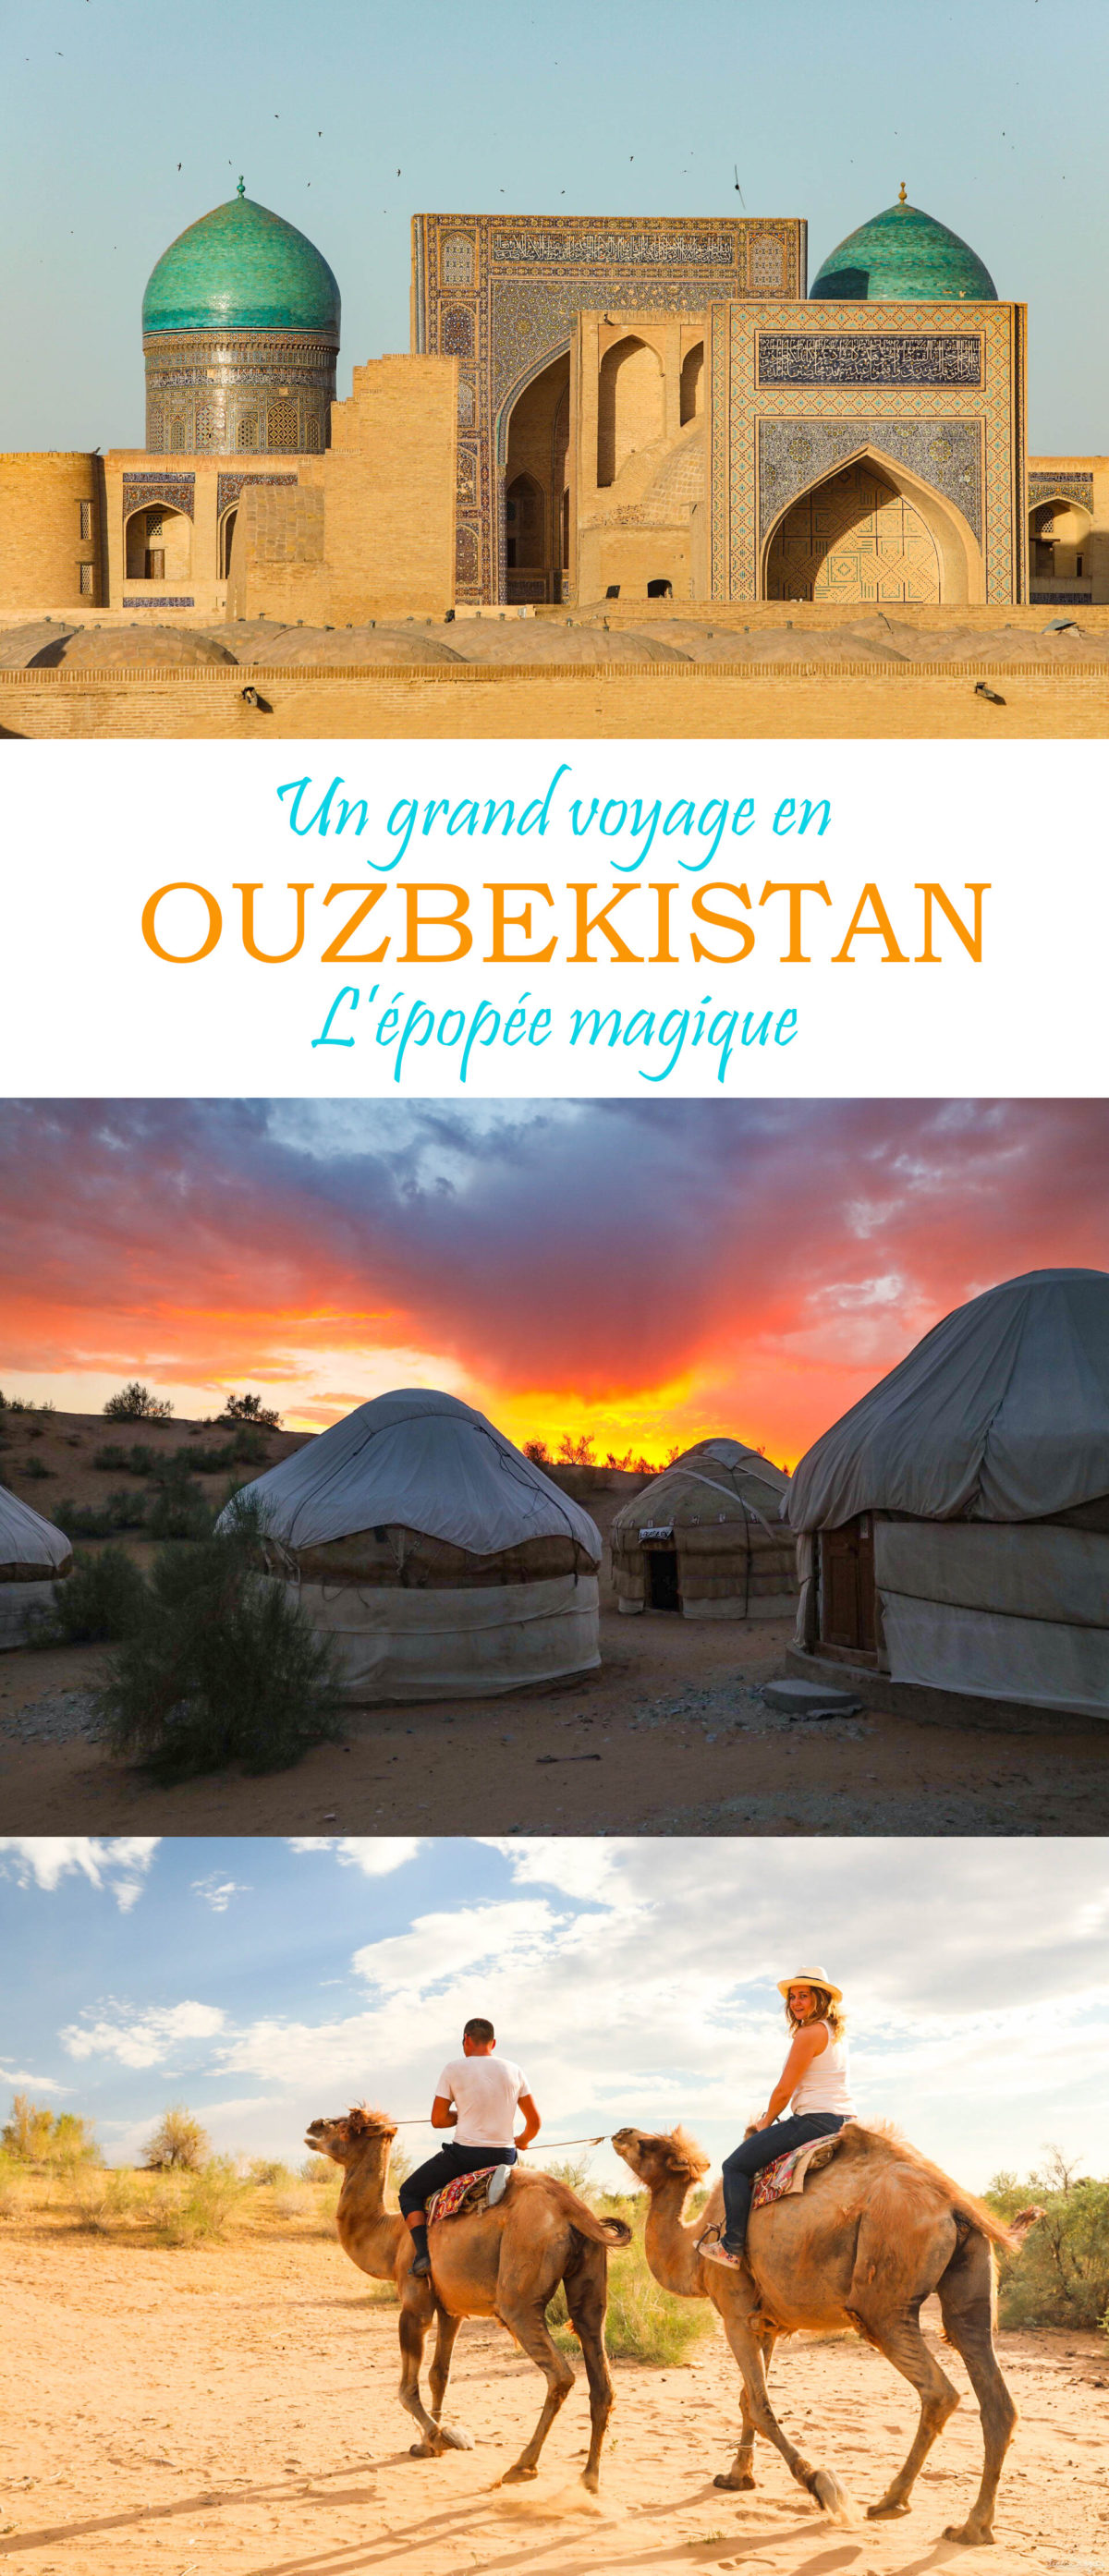 Un voyage de légende en Ouzbékistan sur les steppes de la soie, entre Samarcande, Boukhara, la steppe et les montagnes. #ouzbekistan